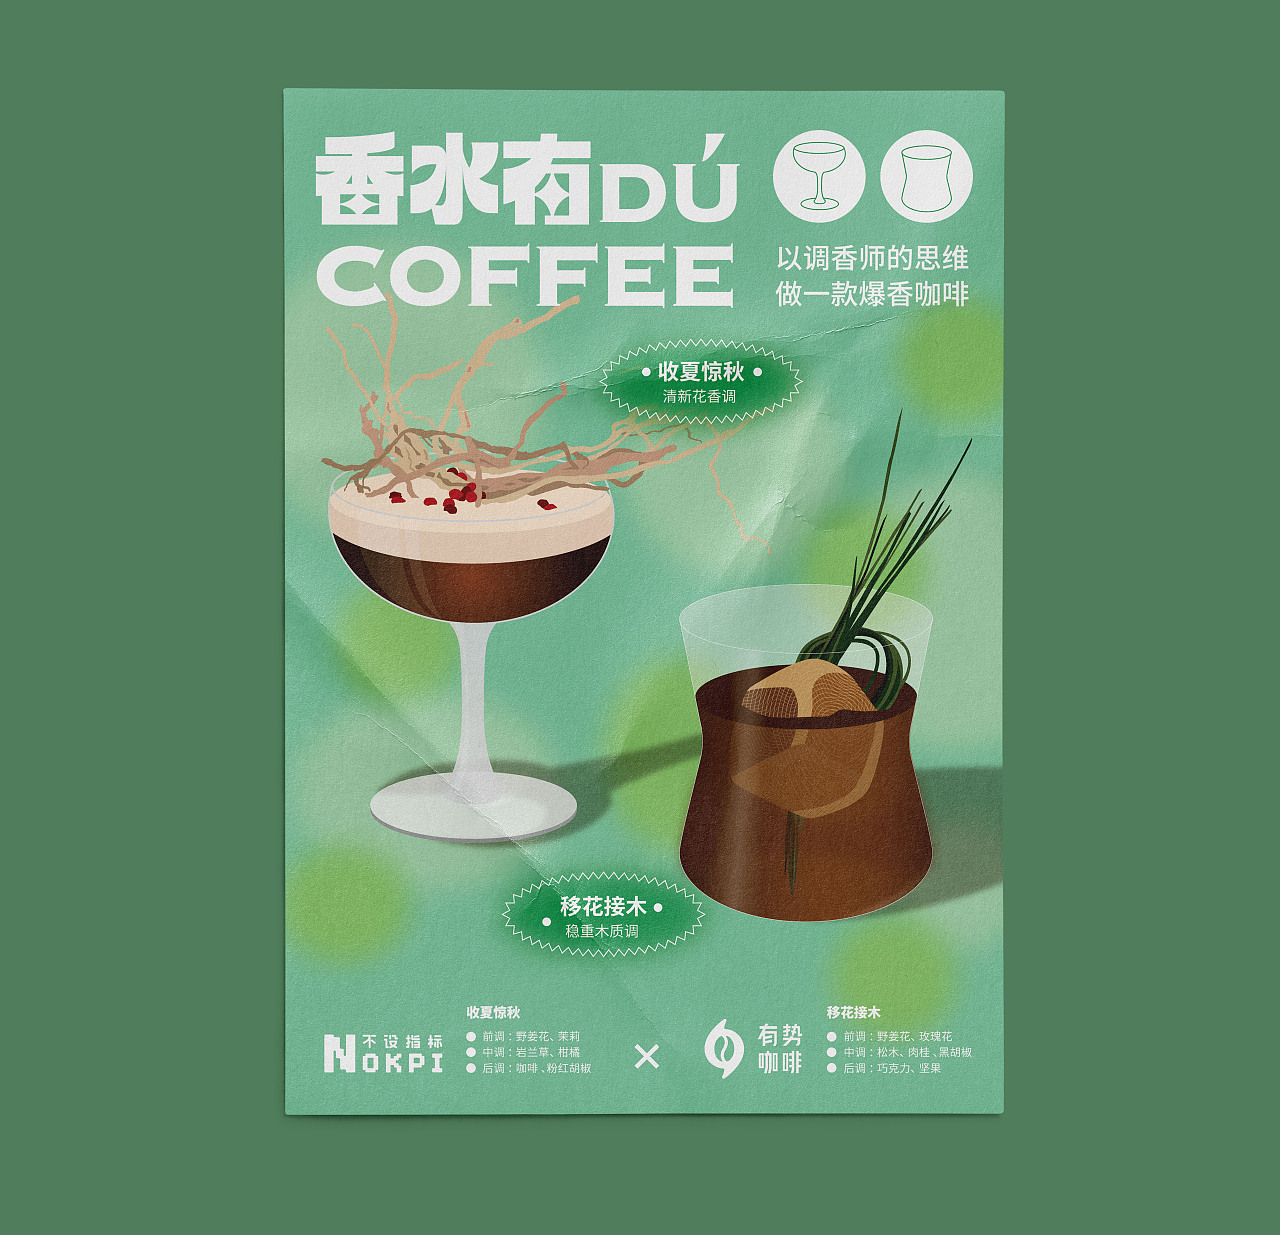 咖啡品种及口味特点的关系 咖啡生豆 咖啡品种及口味图表对照 中国咖啡网